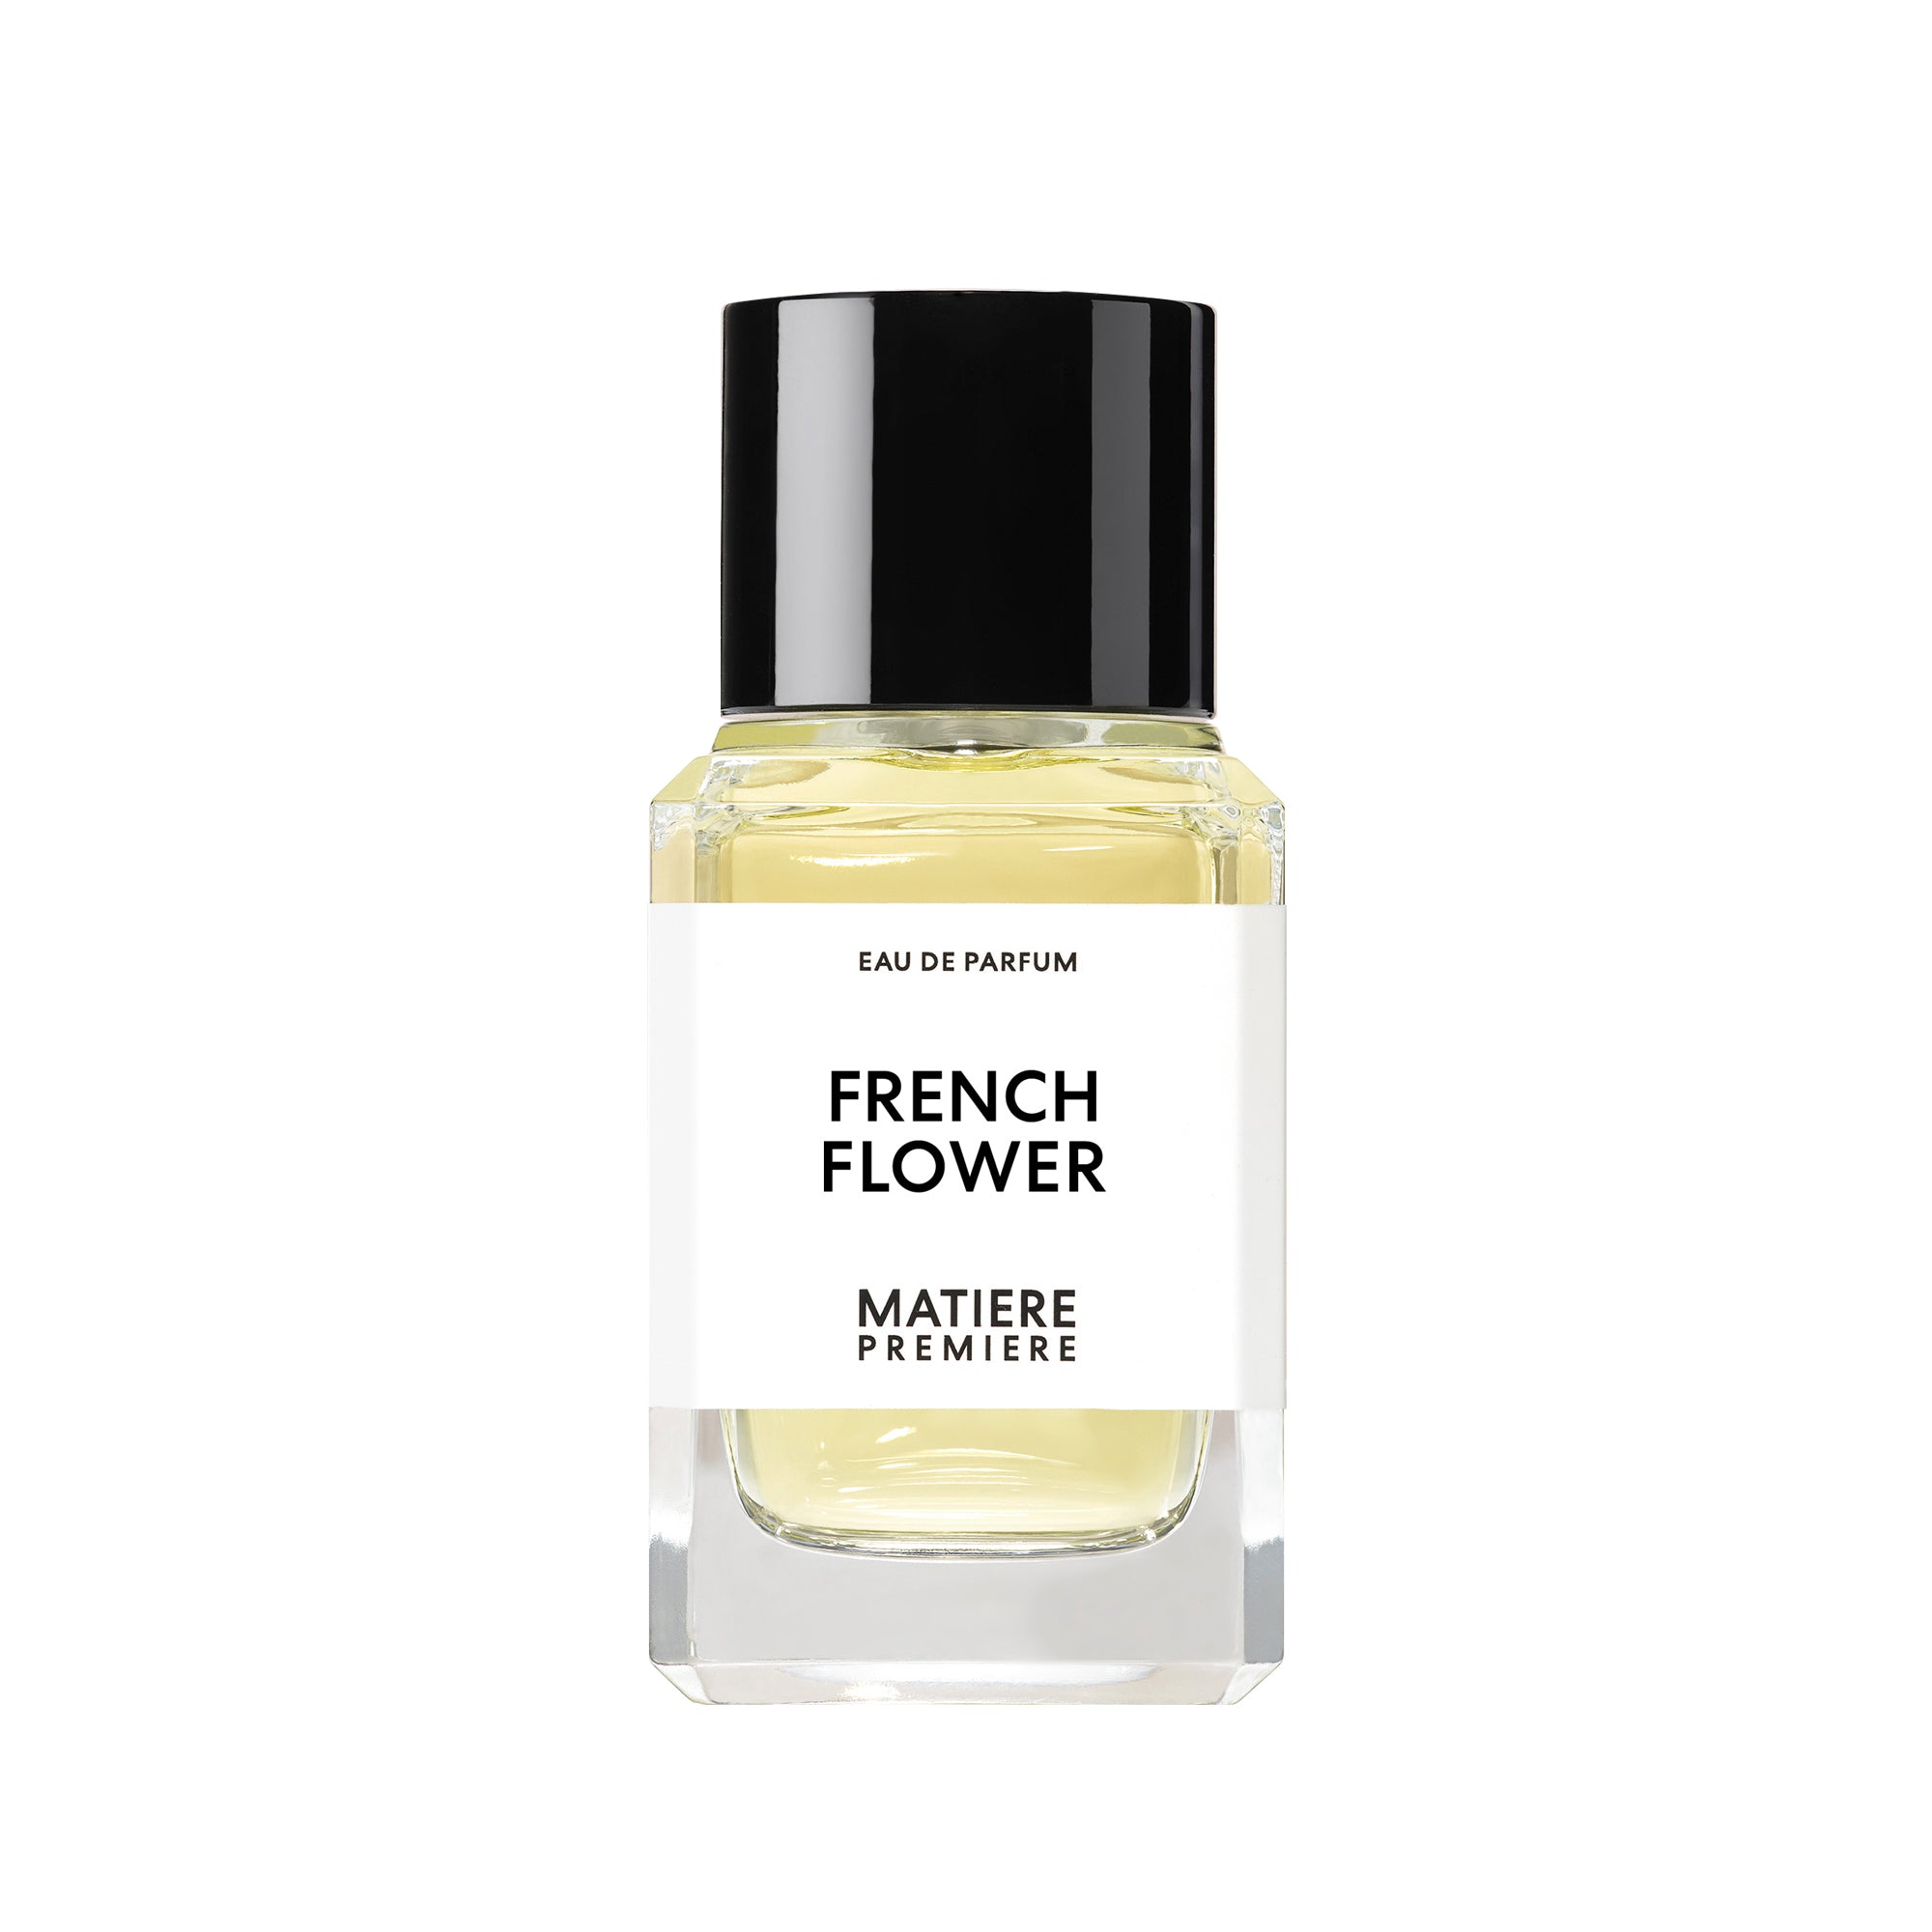 MATIERE Premiere French Flower EAU de PARFUM Spray 100ml